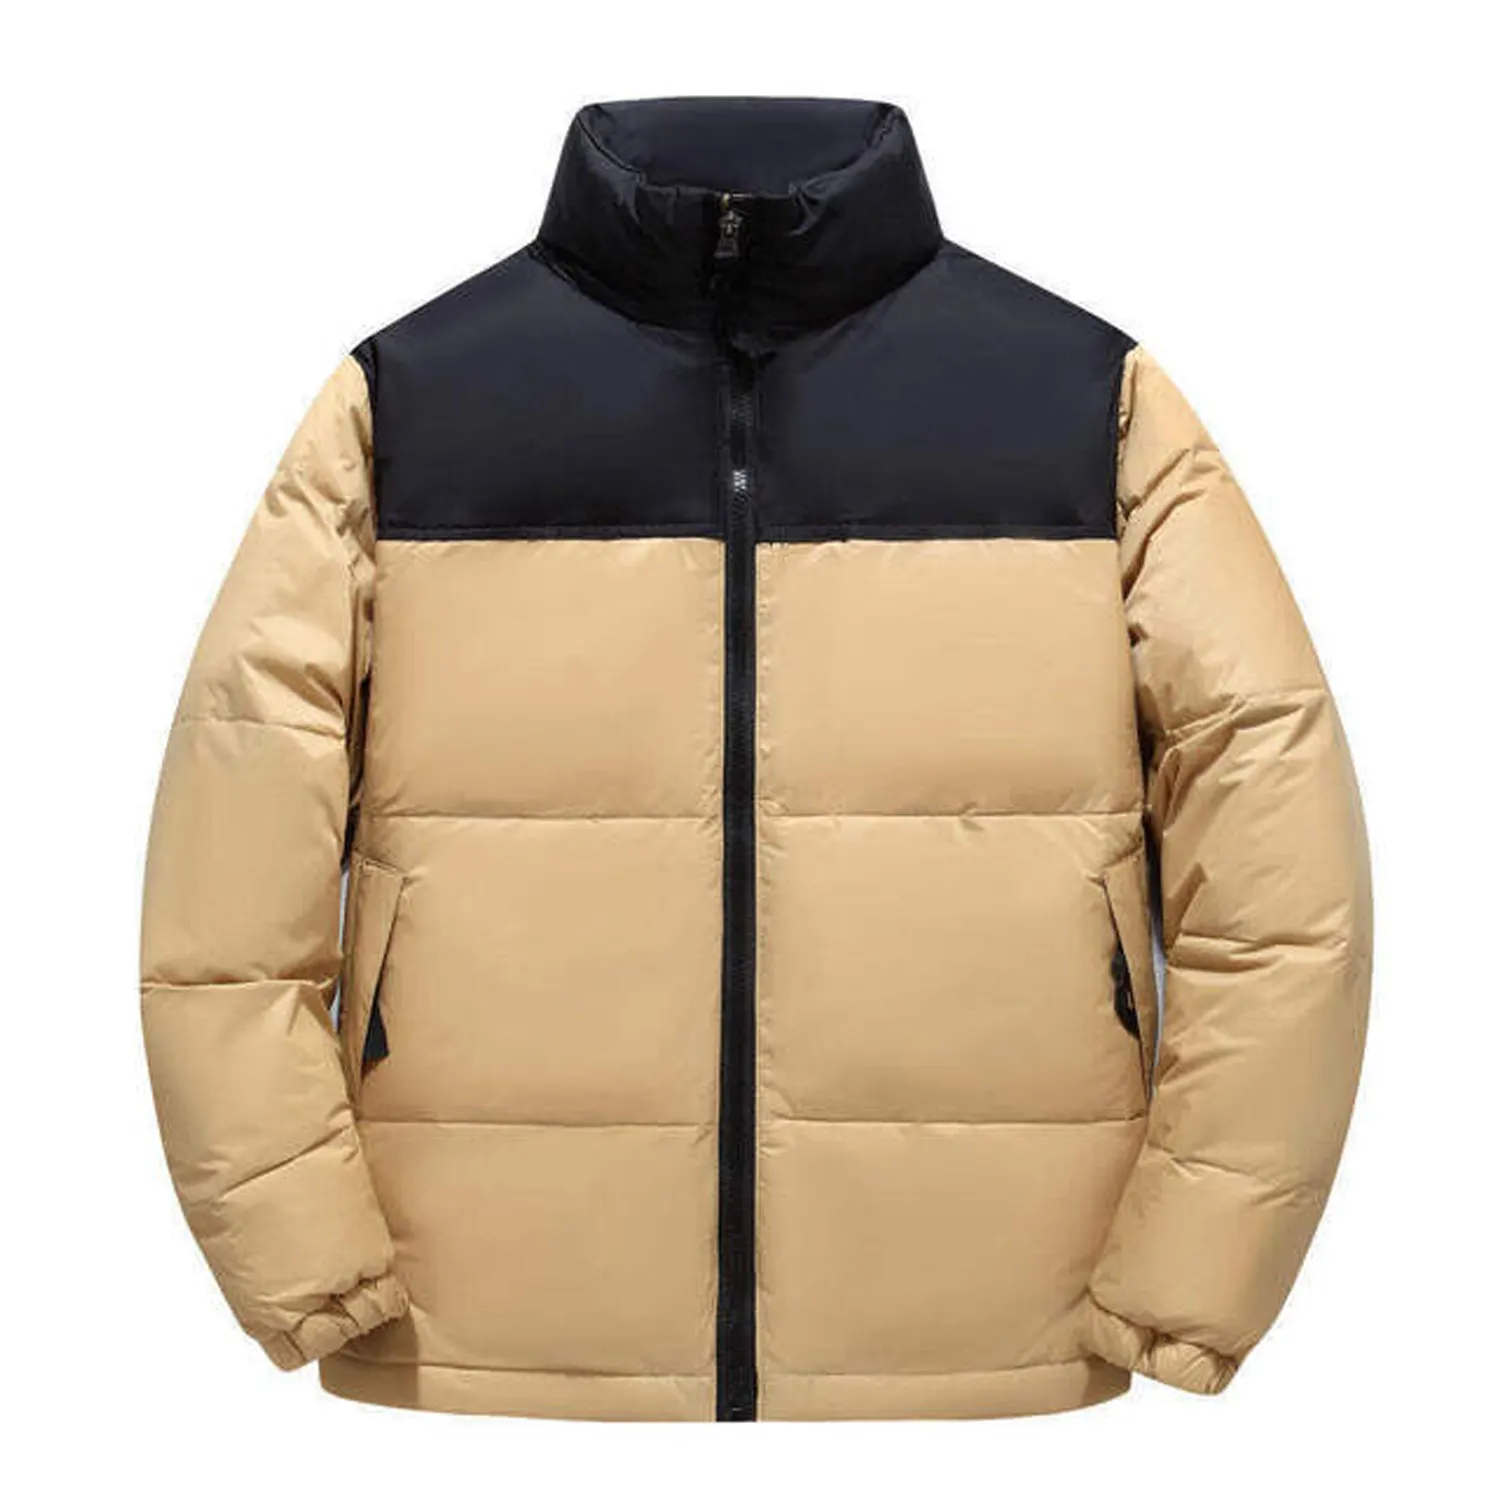 2 renk birleştirmek renk özel sokak tarzı isınmak kirpi ceket ucuz fiyat 2 renk maç kışlık kıyafet kabarık ceket